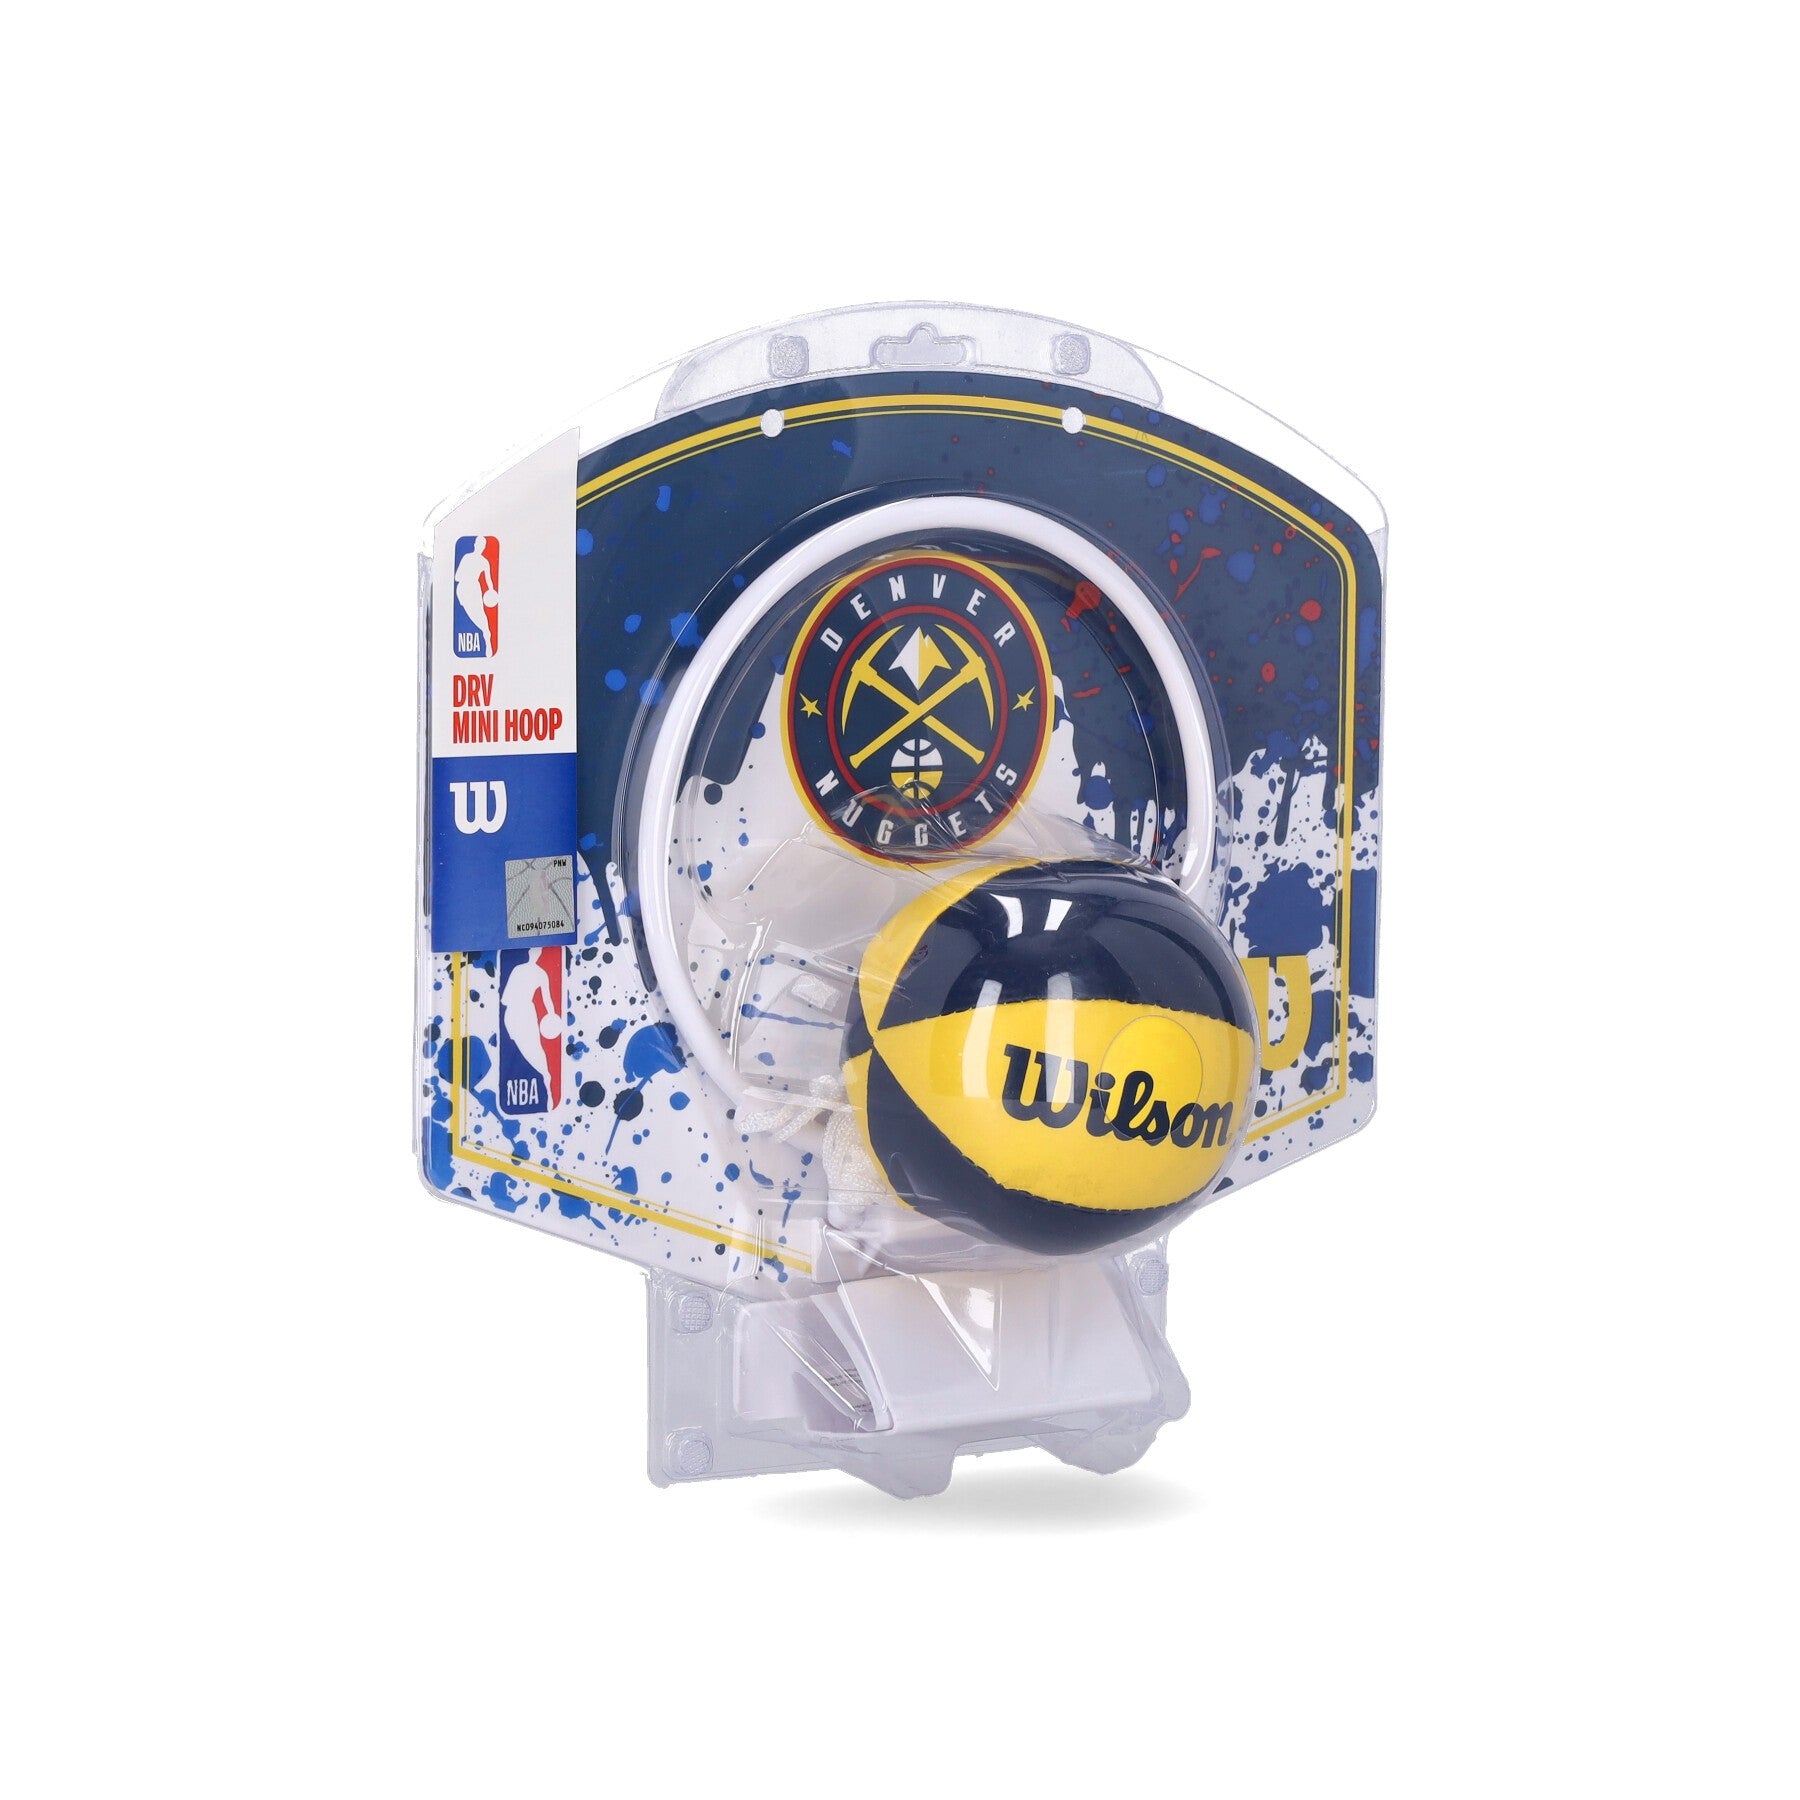 Mini Basketball Set Uomo Nba Team Mini Hoop Dennug Original Team Colors